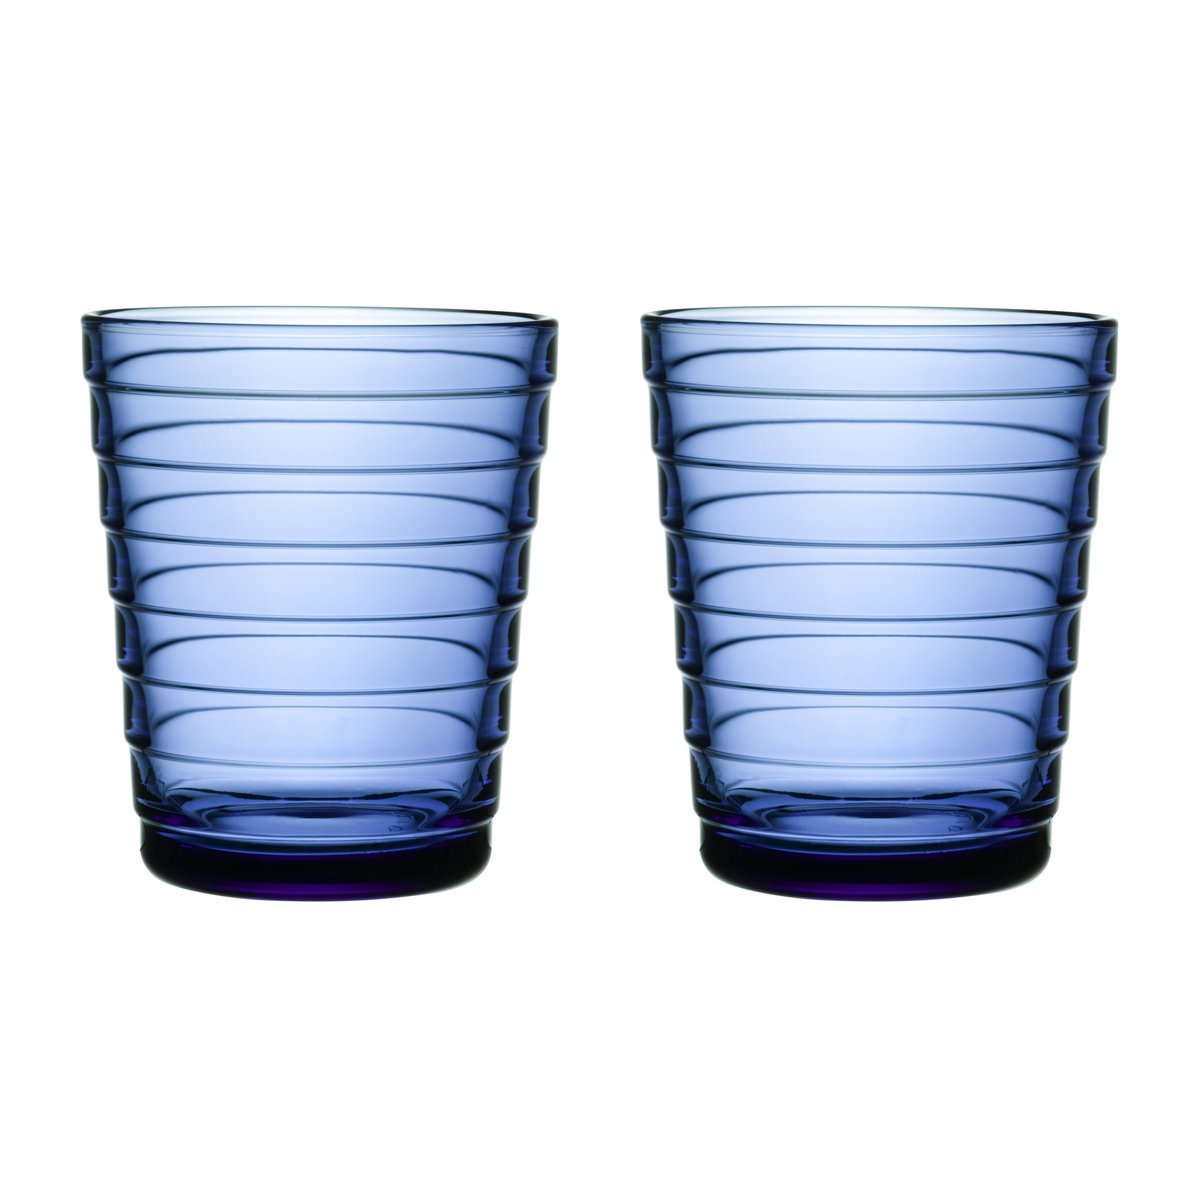 Iittala Aino Aalto drikkeglas 2 stk – 22 cl Ultra marineblå